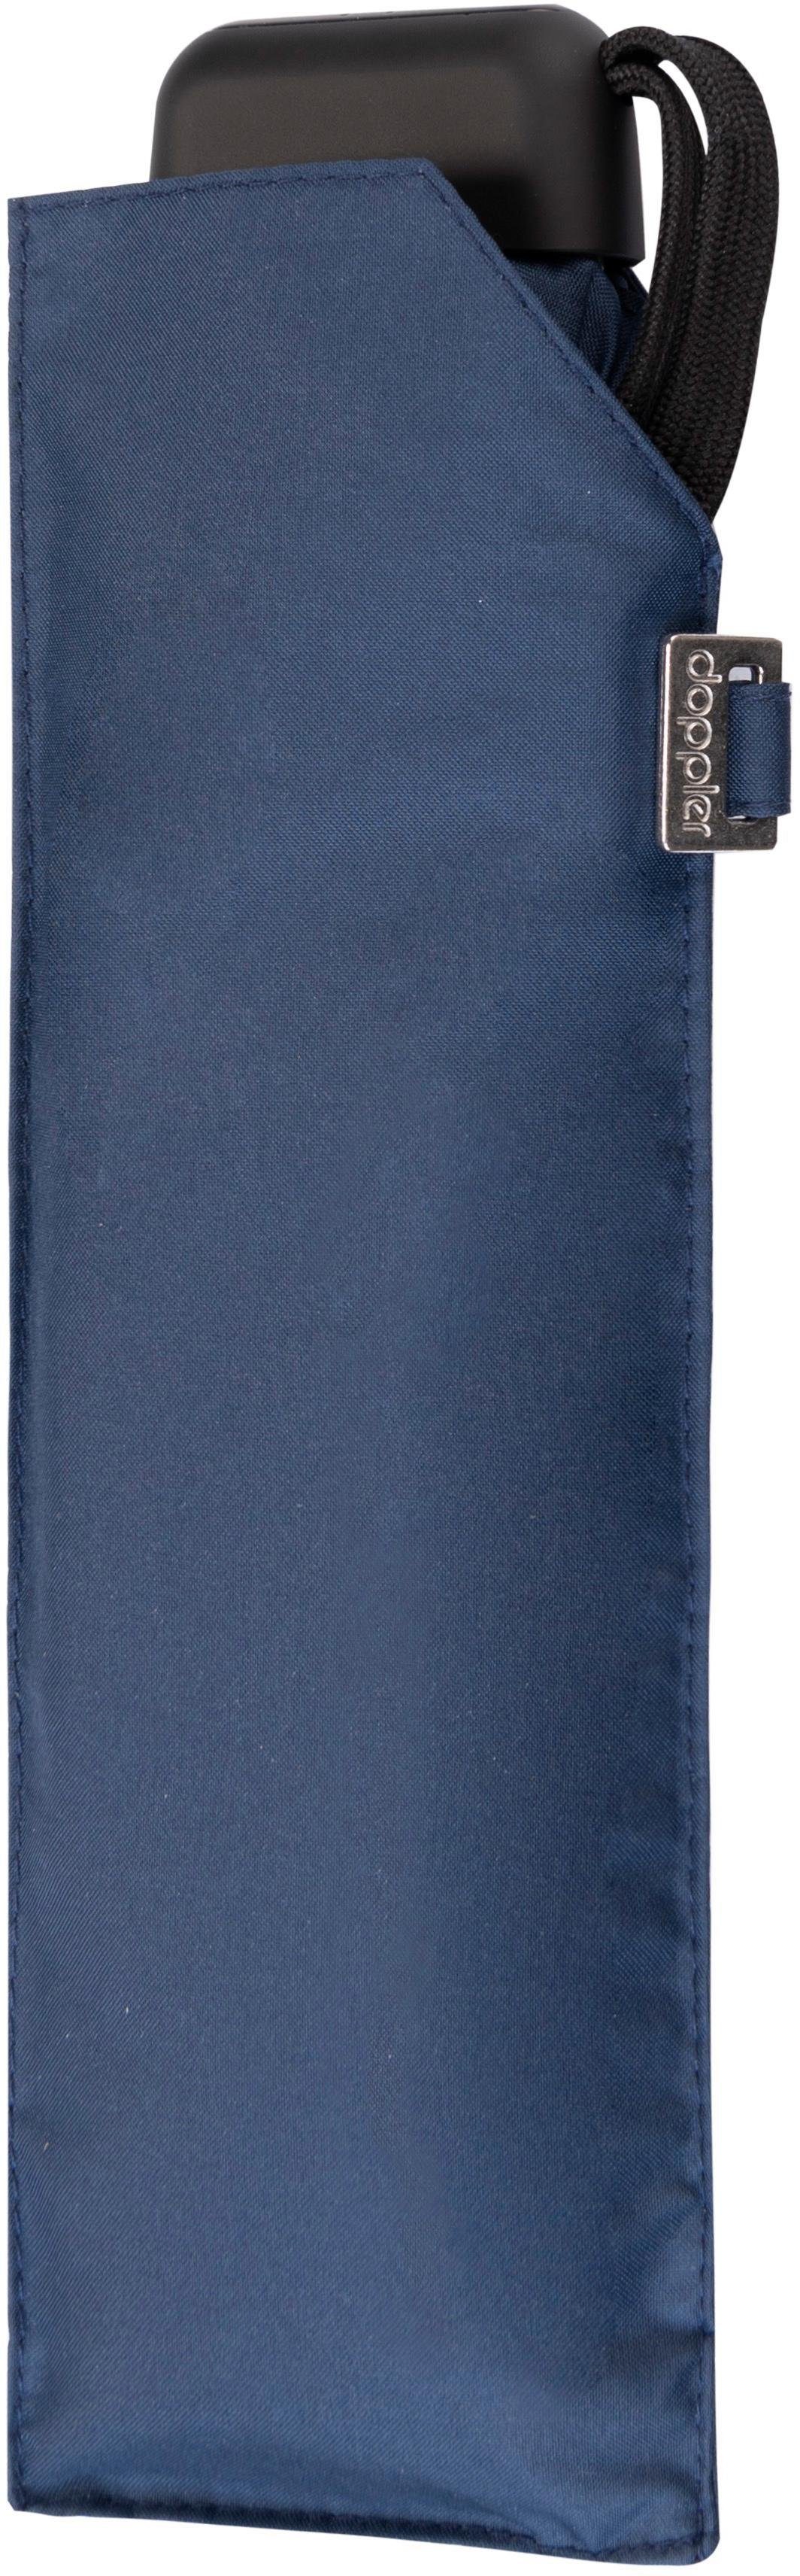 Taschenregenschirm doppler® Mini Navy Slim uni, Carbonsteel